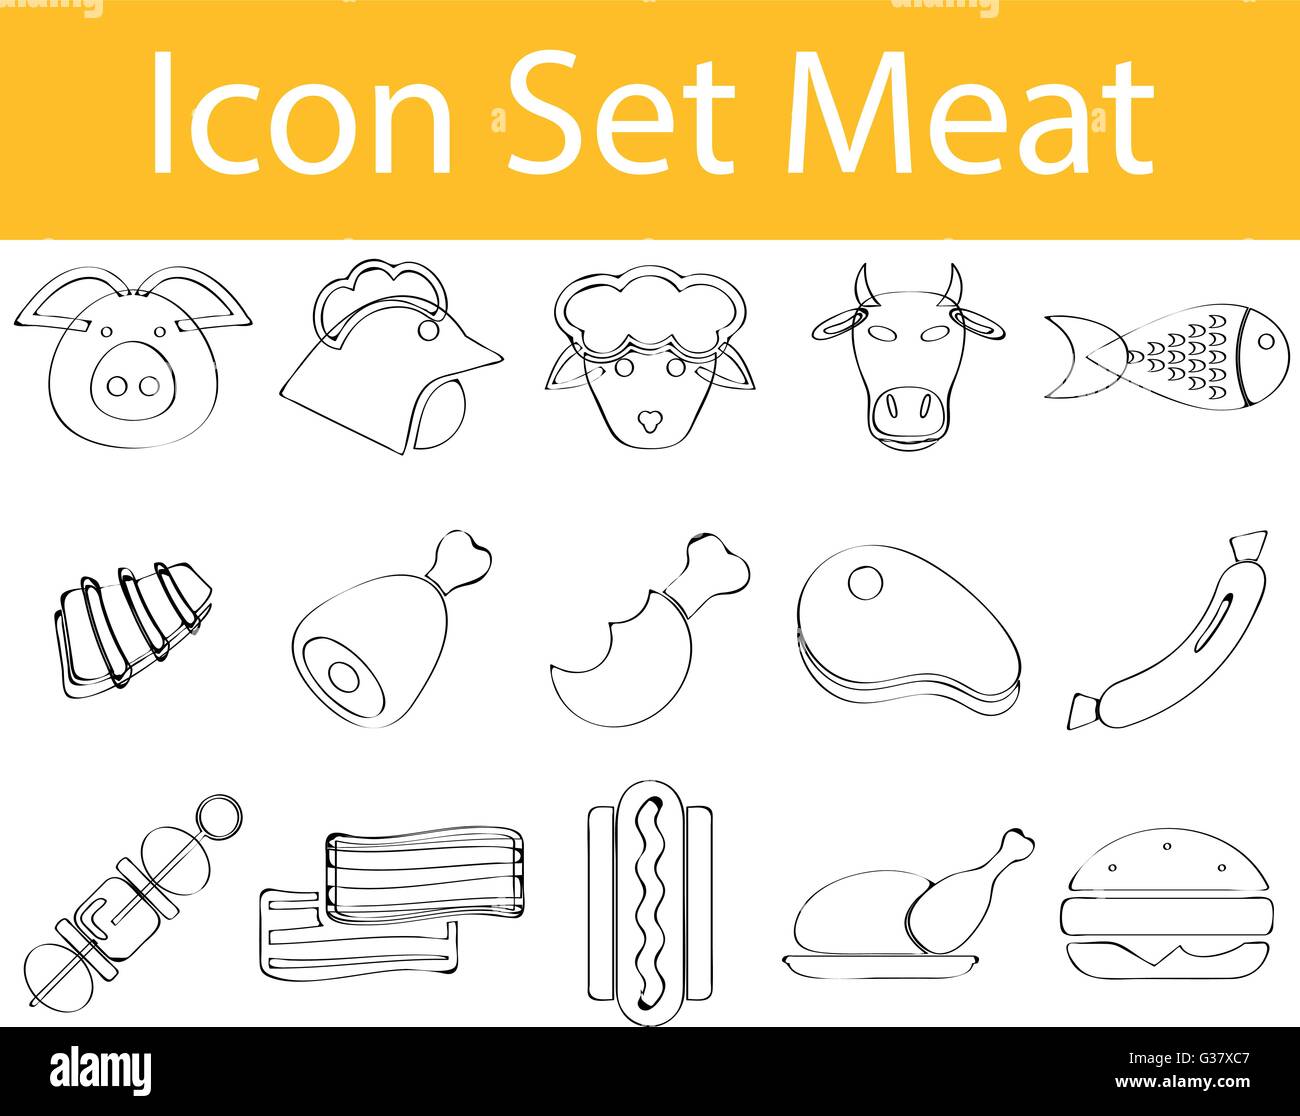 Gezeichnet von Doodle ausgekleidet Icon Set Fleisch mit 15 Symbolen für den kreativen Einsatz in Grafik-design Stock Vektor